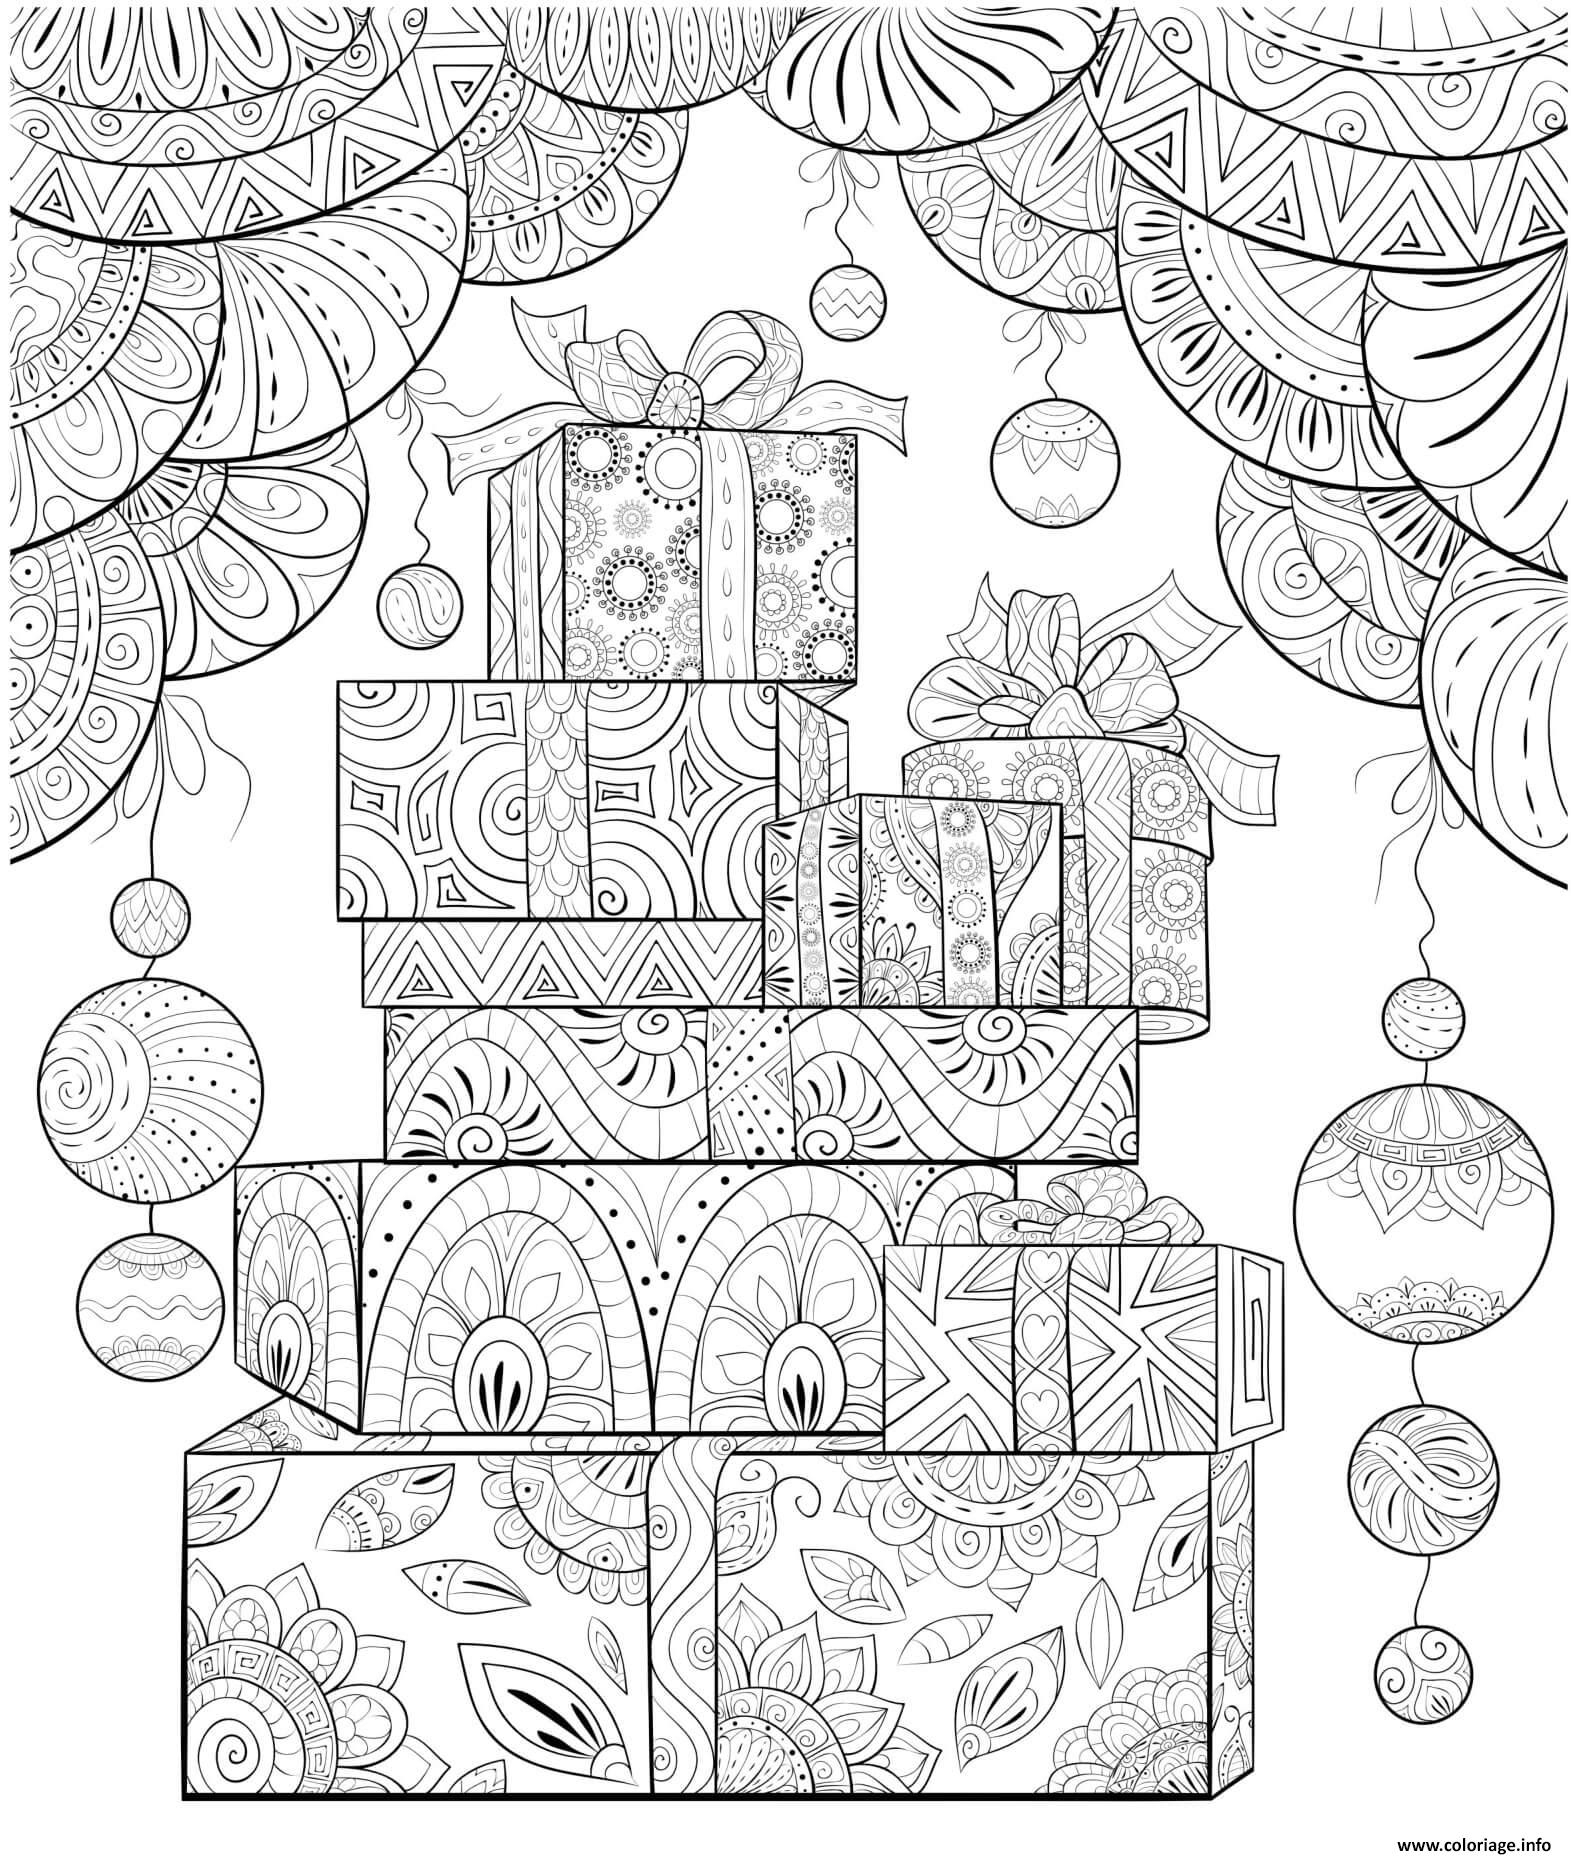 Coloriage Cadeaux De Noel Mandala Anti Stress Dessin Noel Adulte À Imprimer pour Coloriage Noël Gratuit Imprimer 